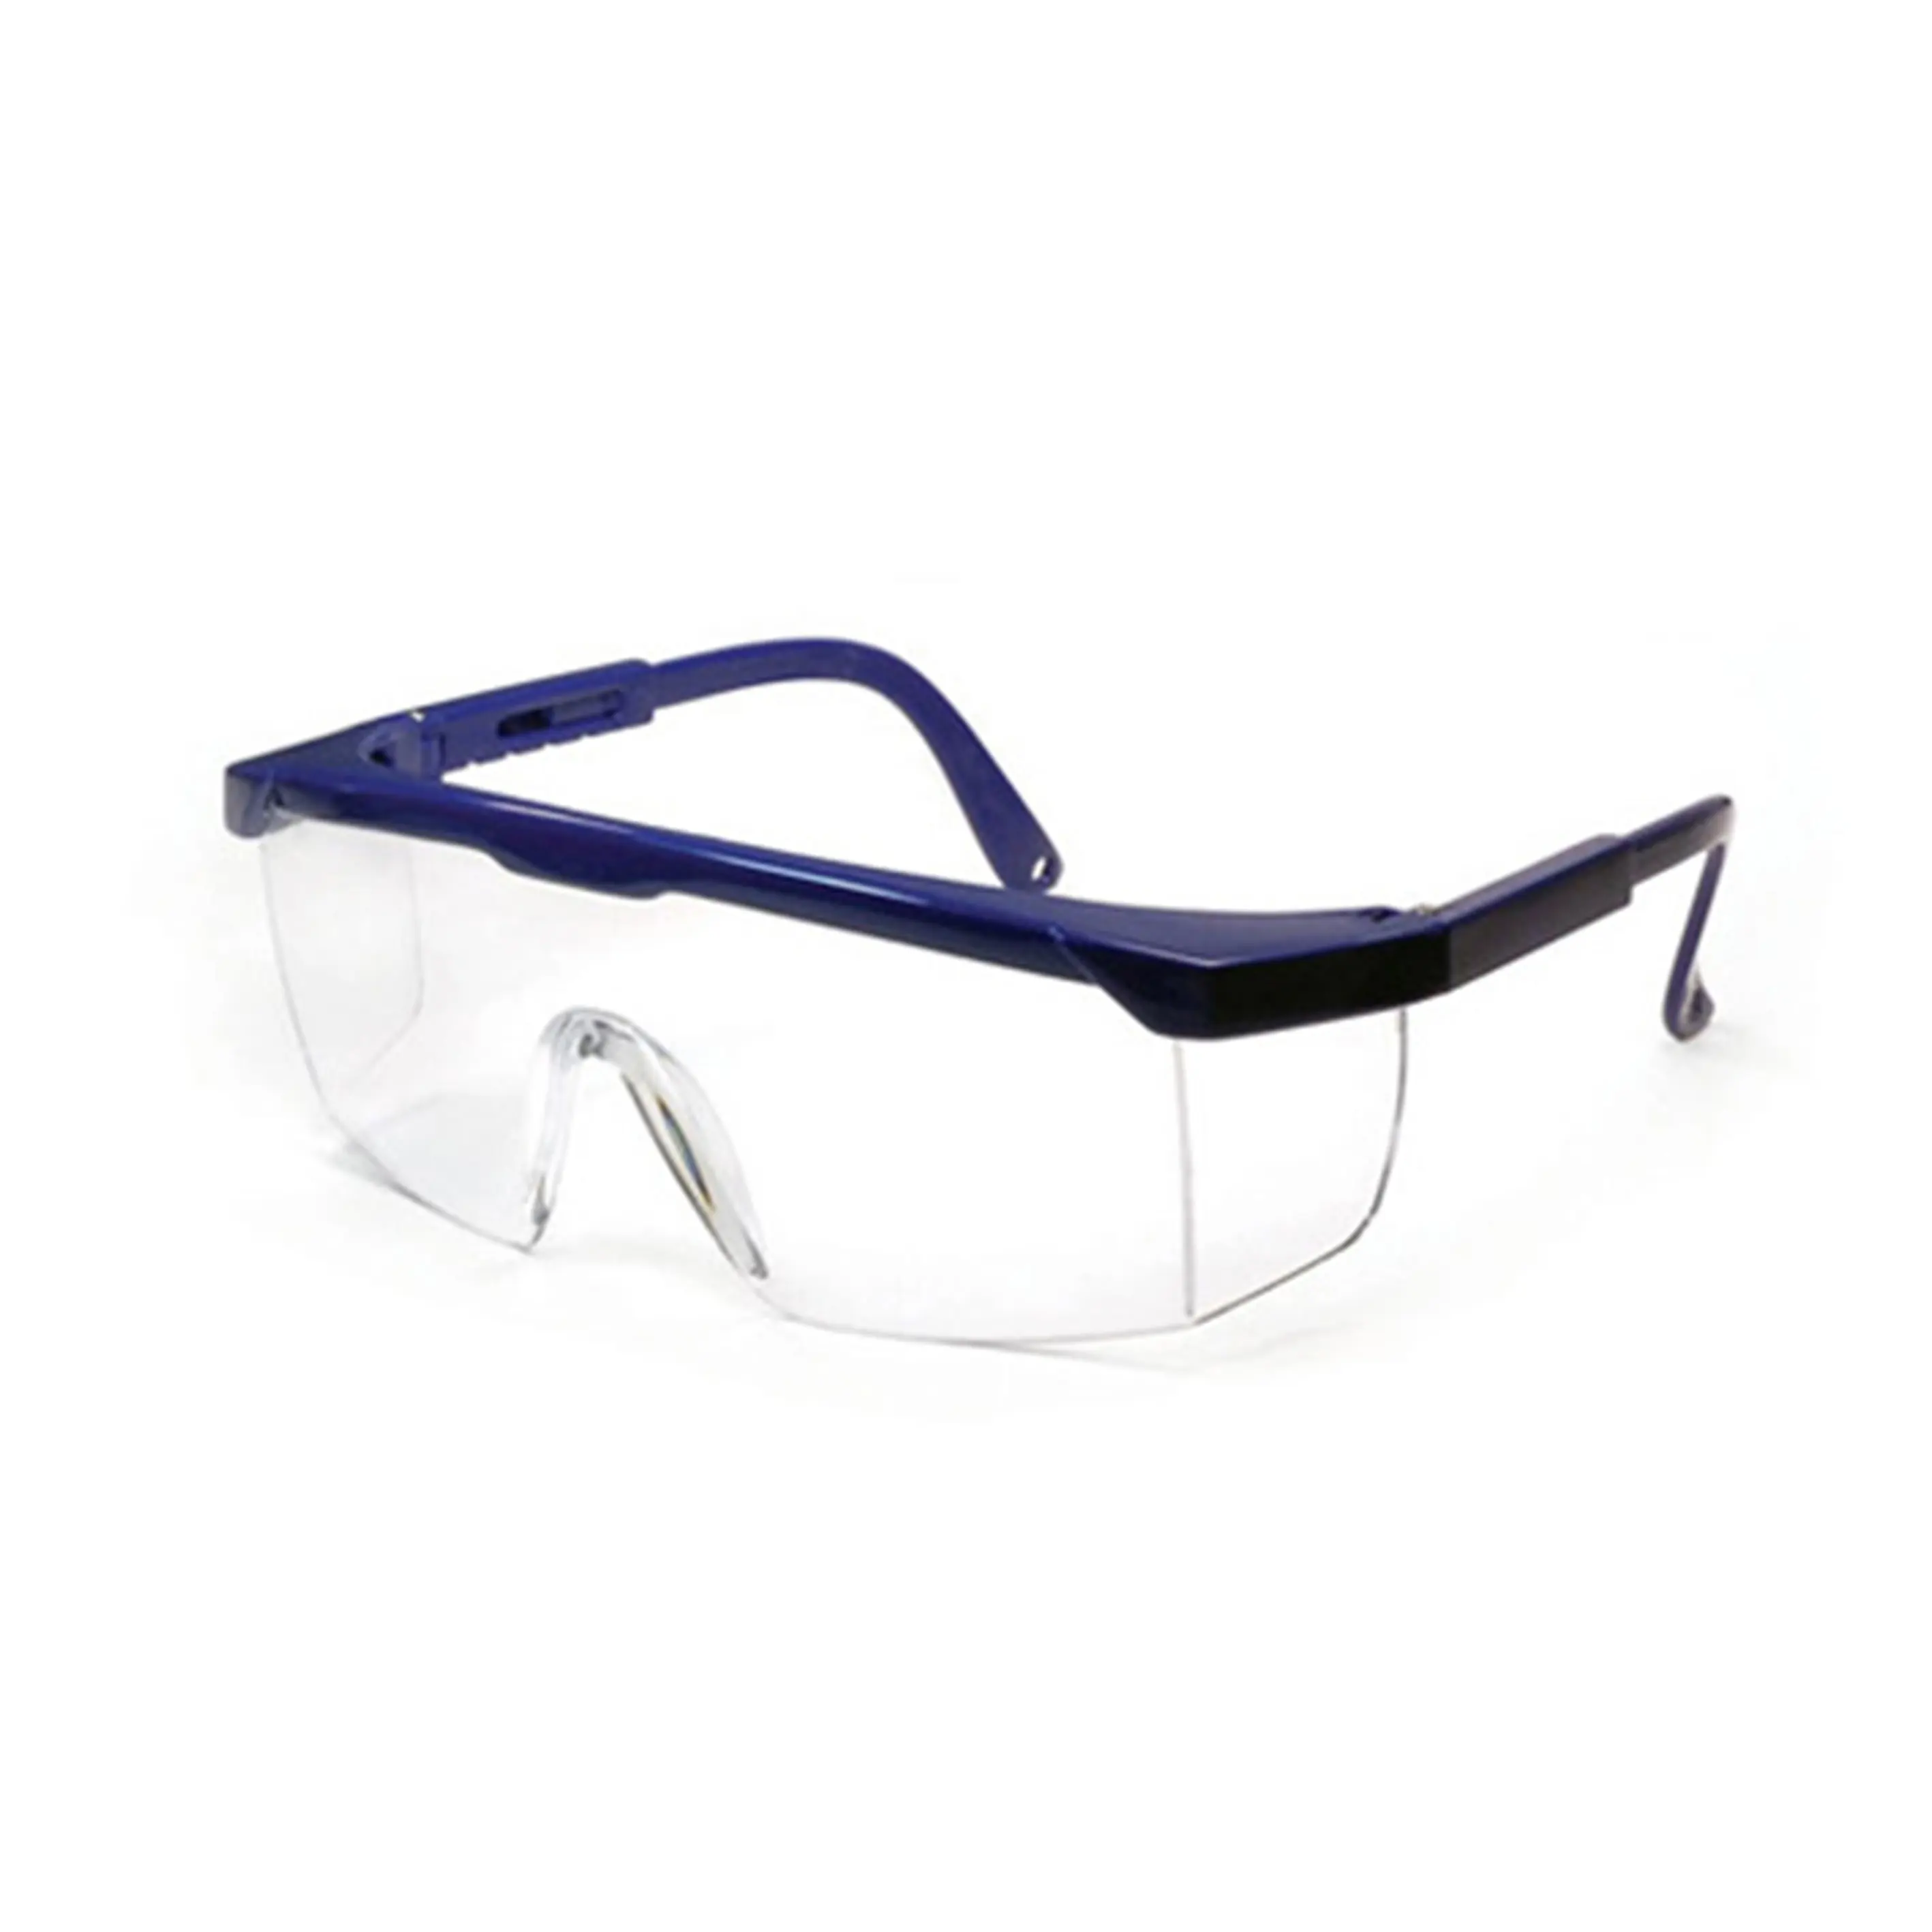 SG1001 안전 안경 충격 방지 작업 고글 보호 측면 쉴드 안경 안전 용접 안경 CE